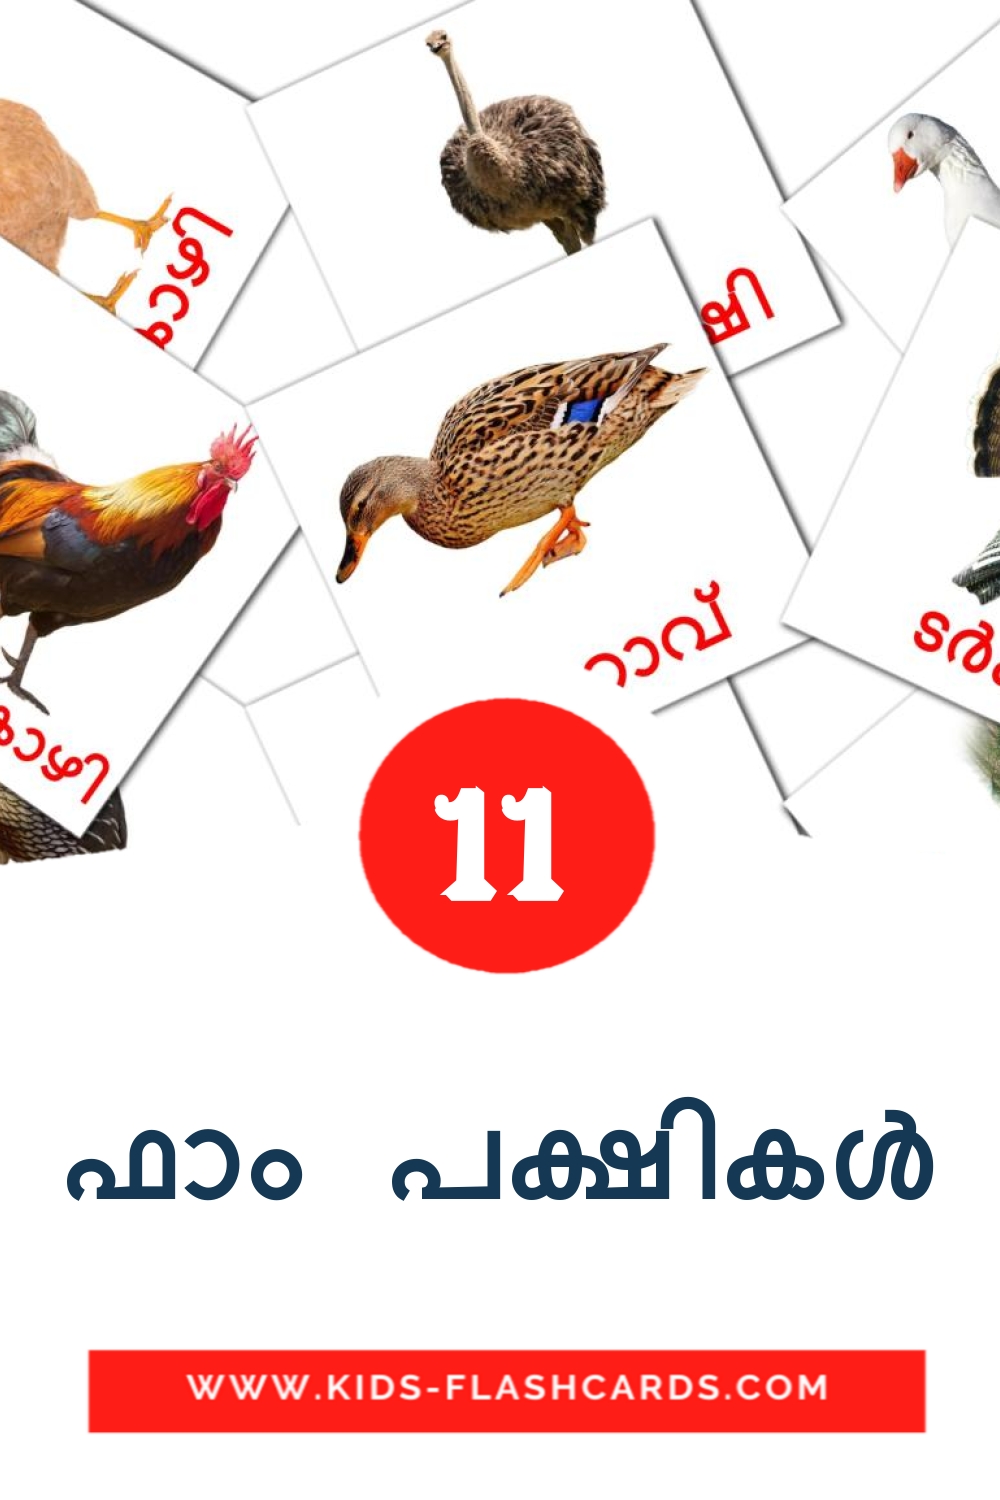 11 tarjetas didacticas de ഫാം പക്ഷികൾ para el jardín de infancia en malayalam